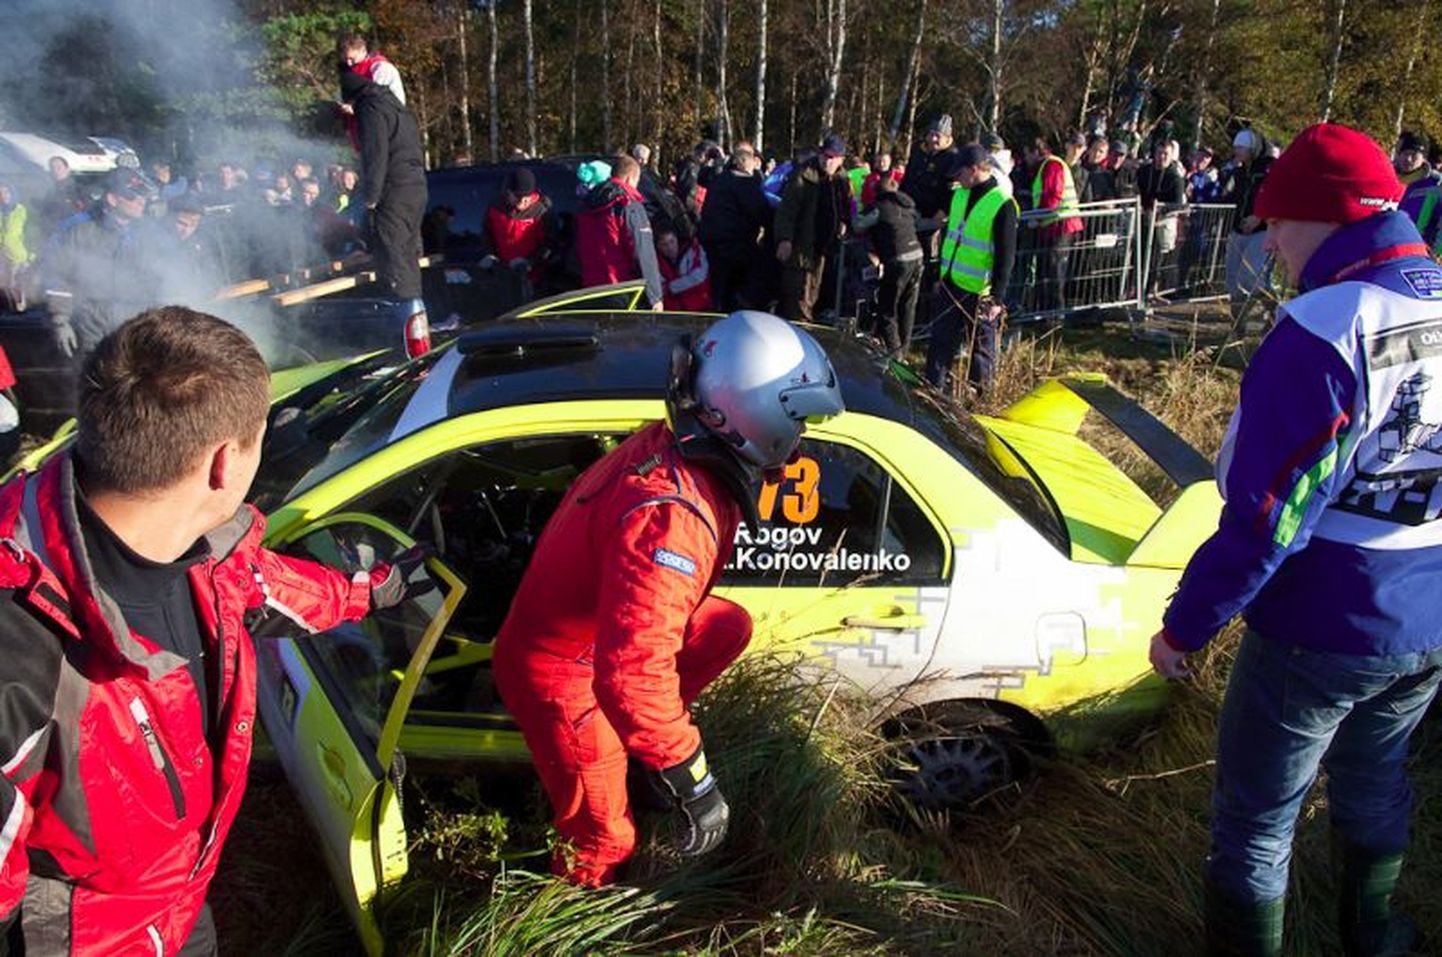 Eelmise aasta Saaremaa rallil juhtus õnnetus, kui Venemaa rallisõitja Jevgeni Rogov ei suutnud autot valitseda ja kihutas publiku sekka. Viga sai seitse inimest.